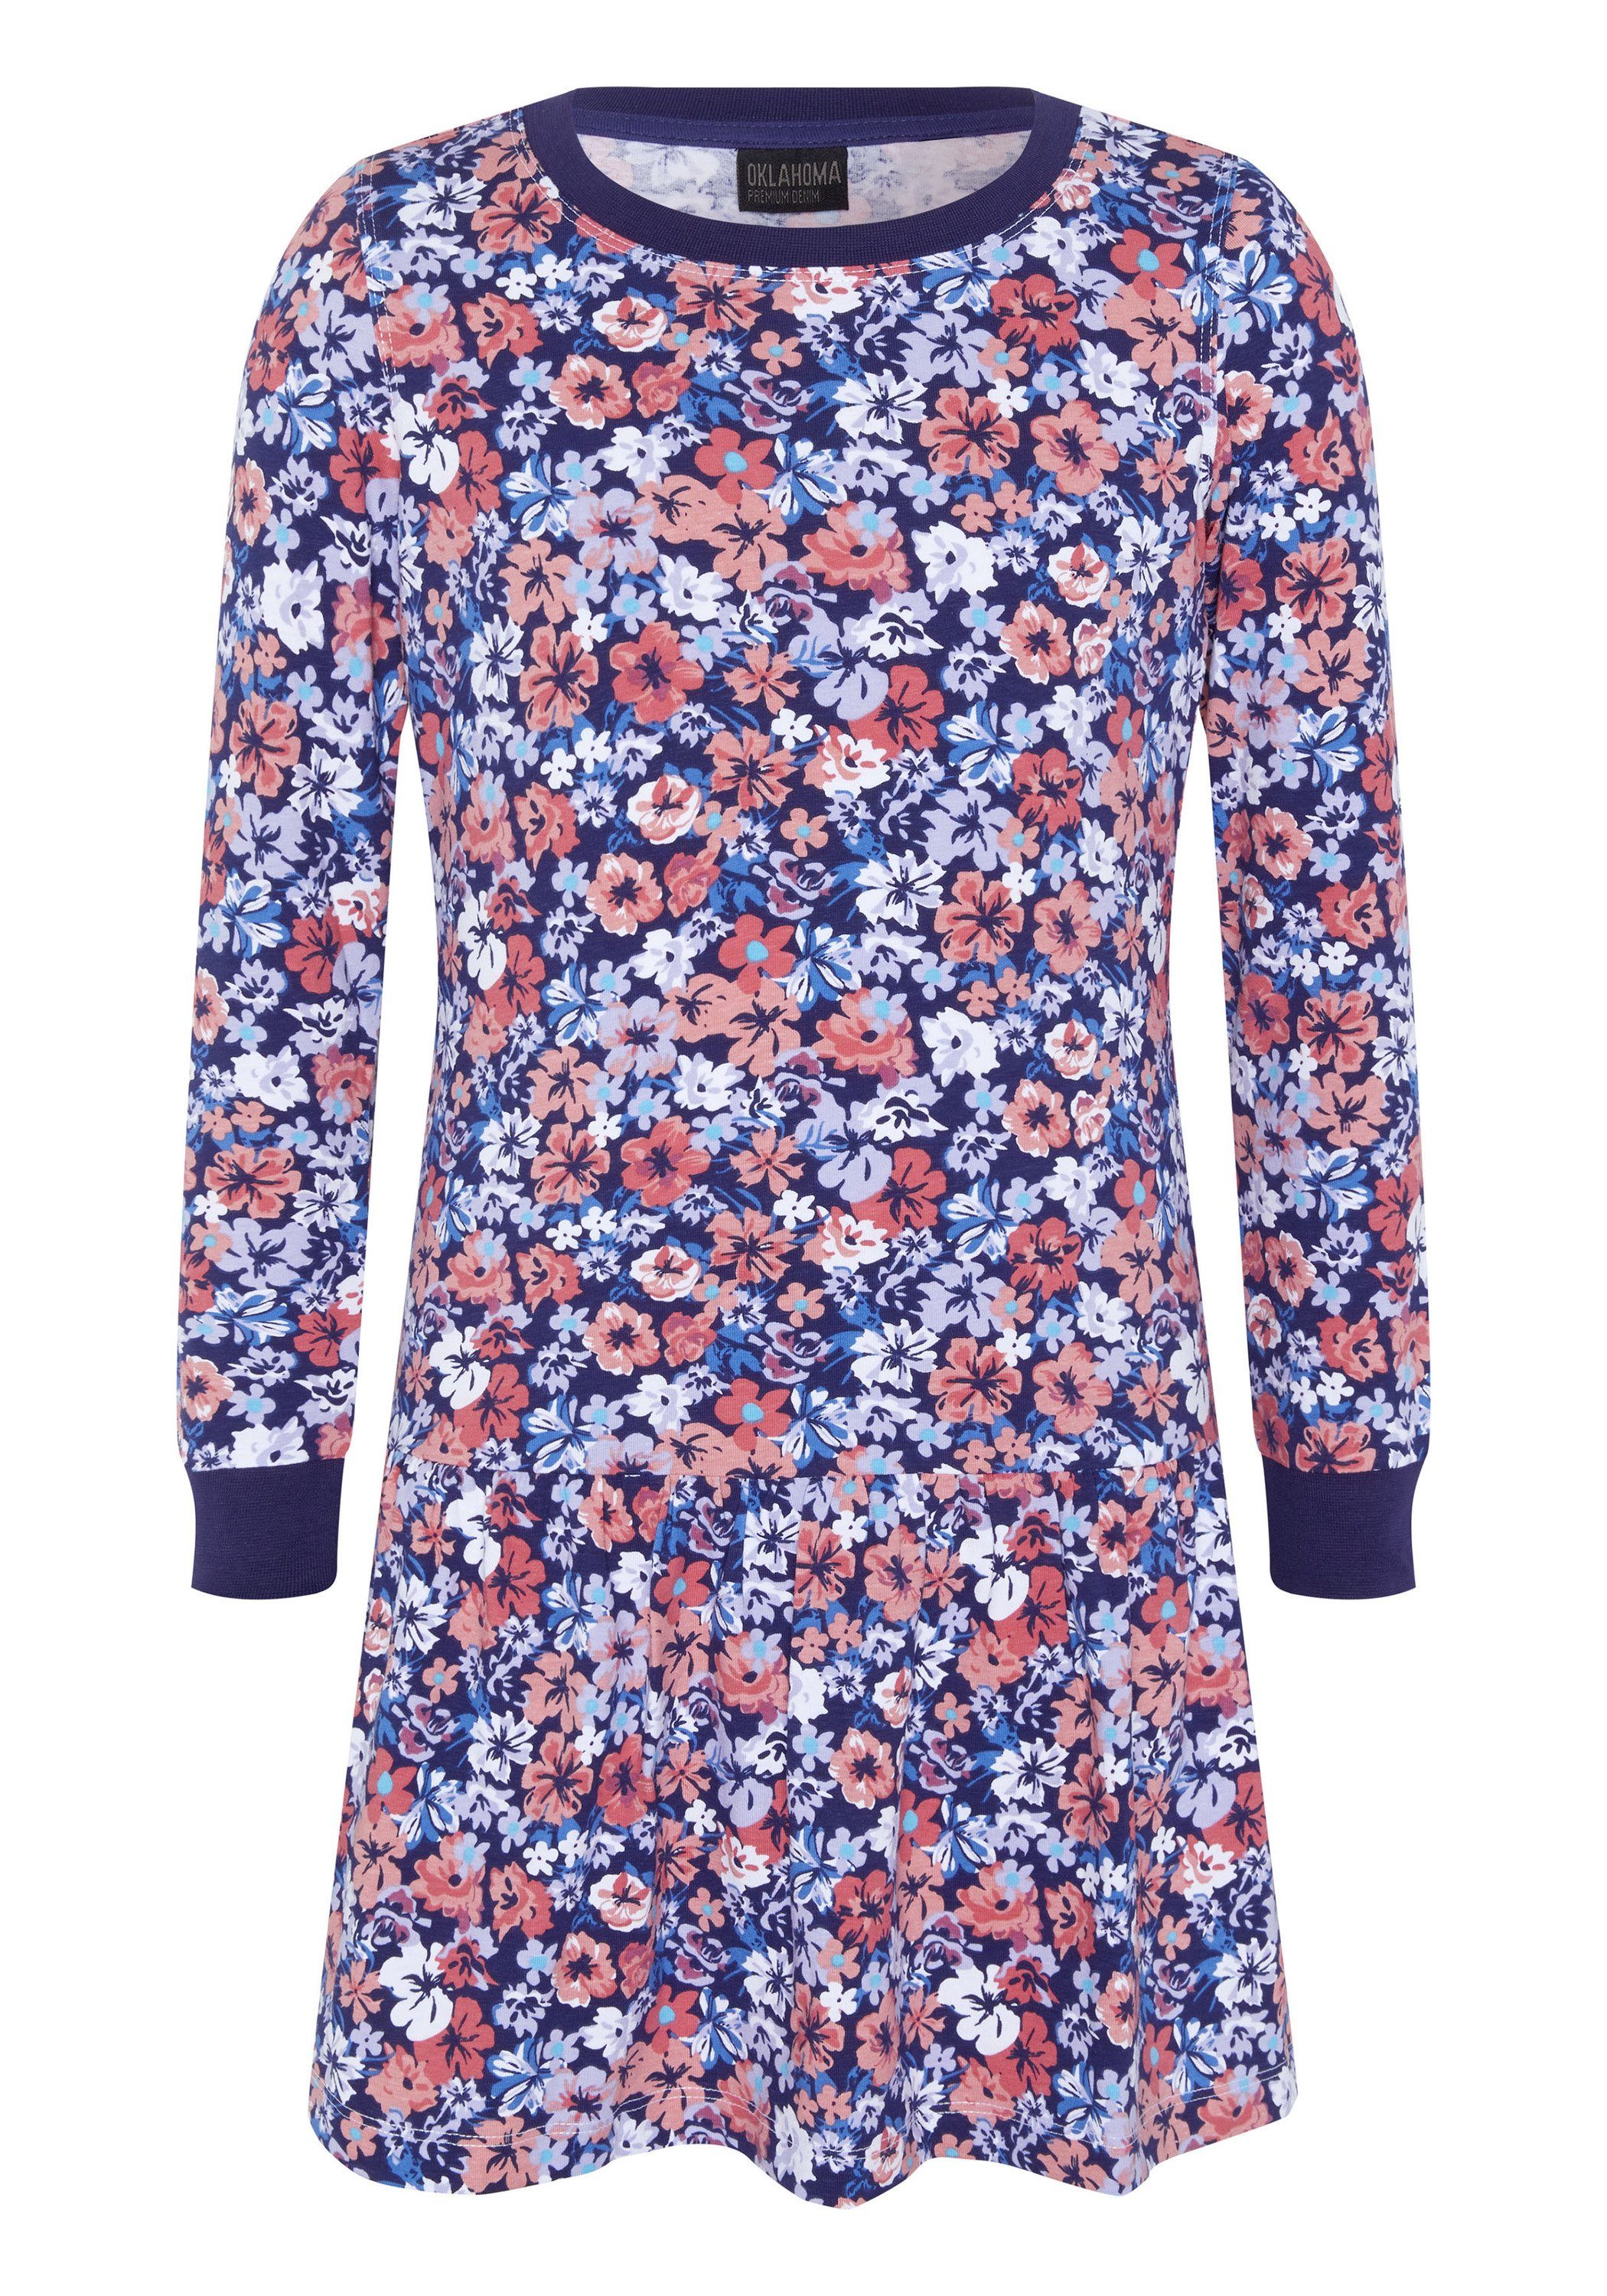 OKLAHOMA PREMIUM DENIM Jerseykleid mit verspieltem Allover Blumenprint